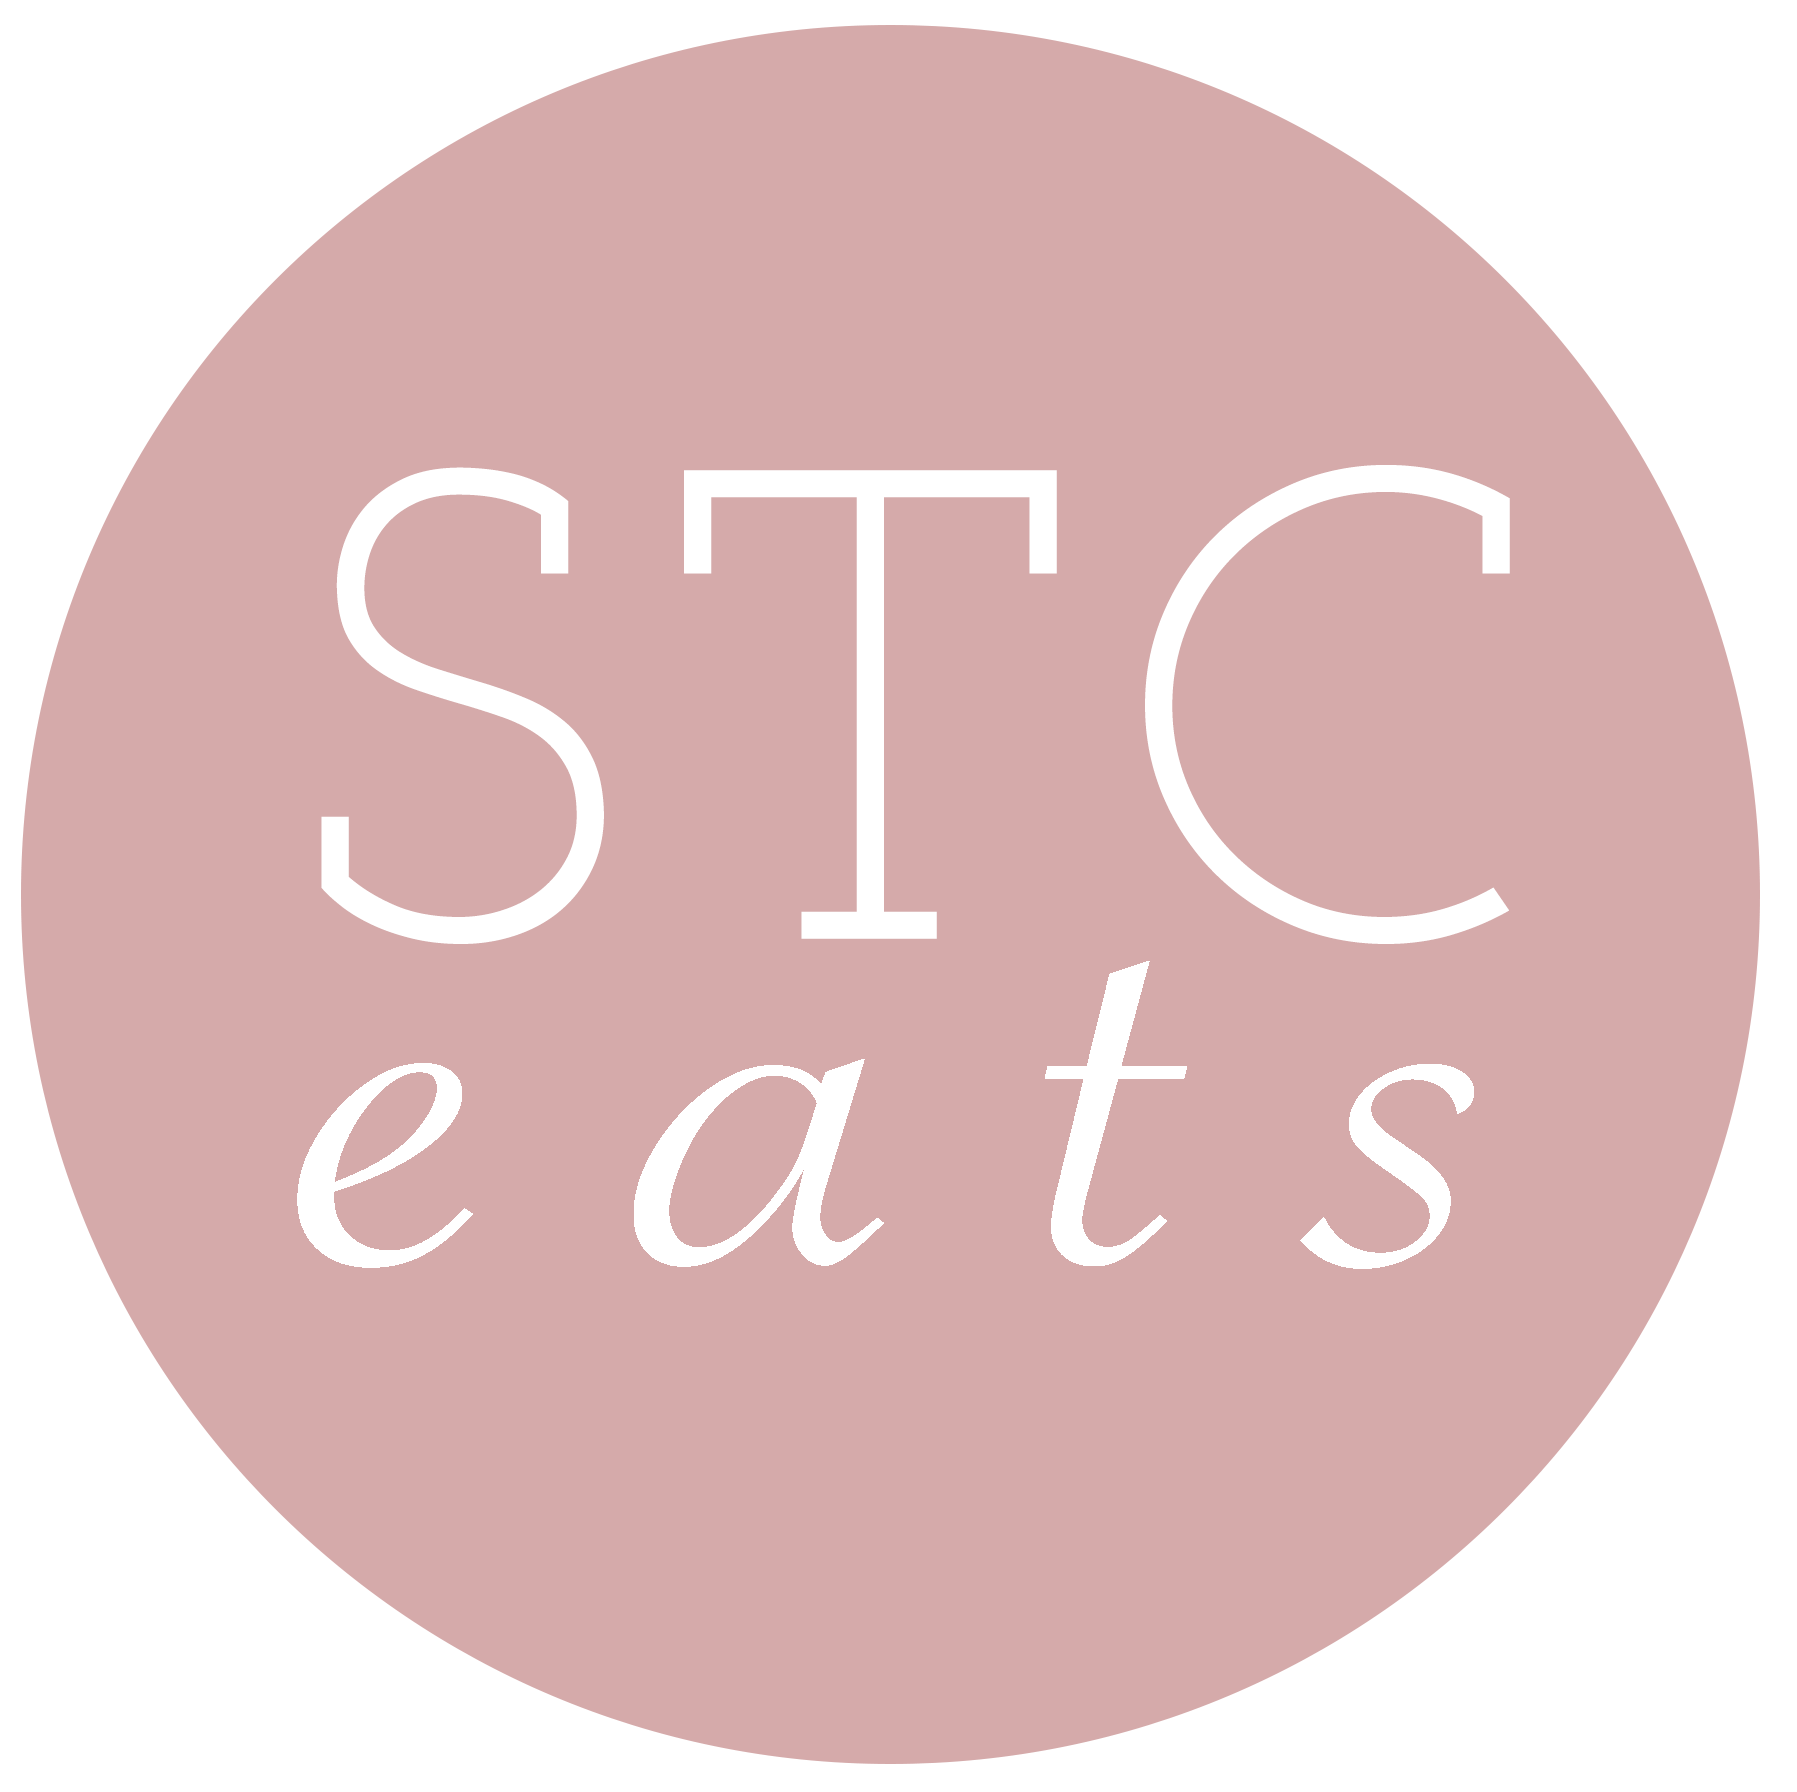 stc eats